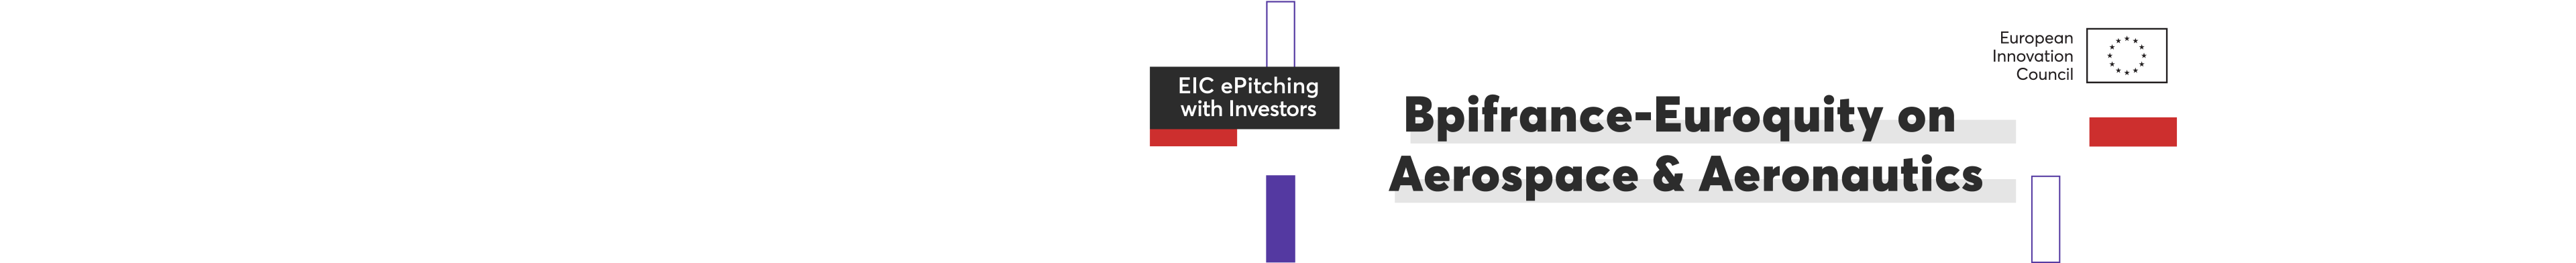 EIC_ePitching Investors_Bpifrance-Euroquity Aerospace & Aeronautics_Community_Banner